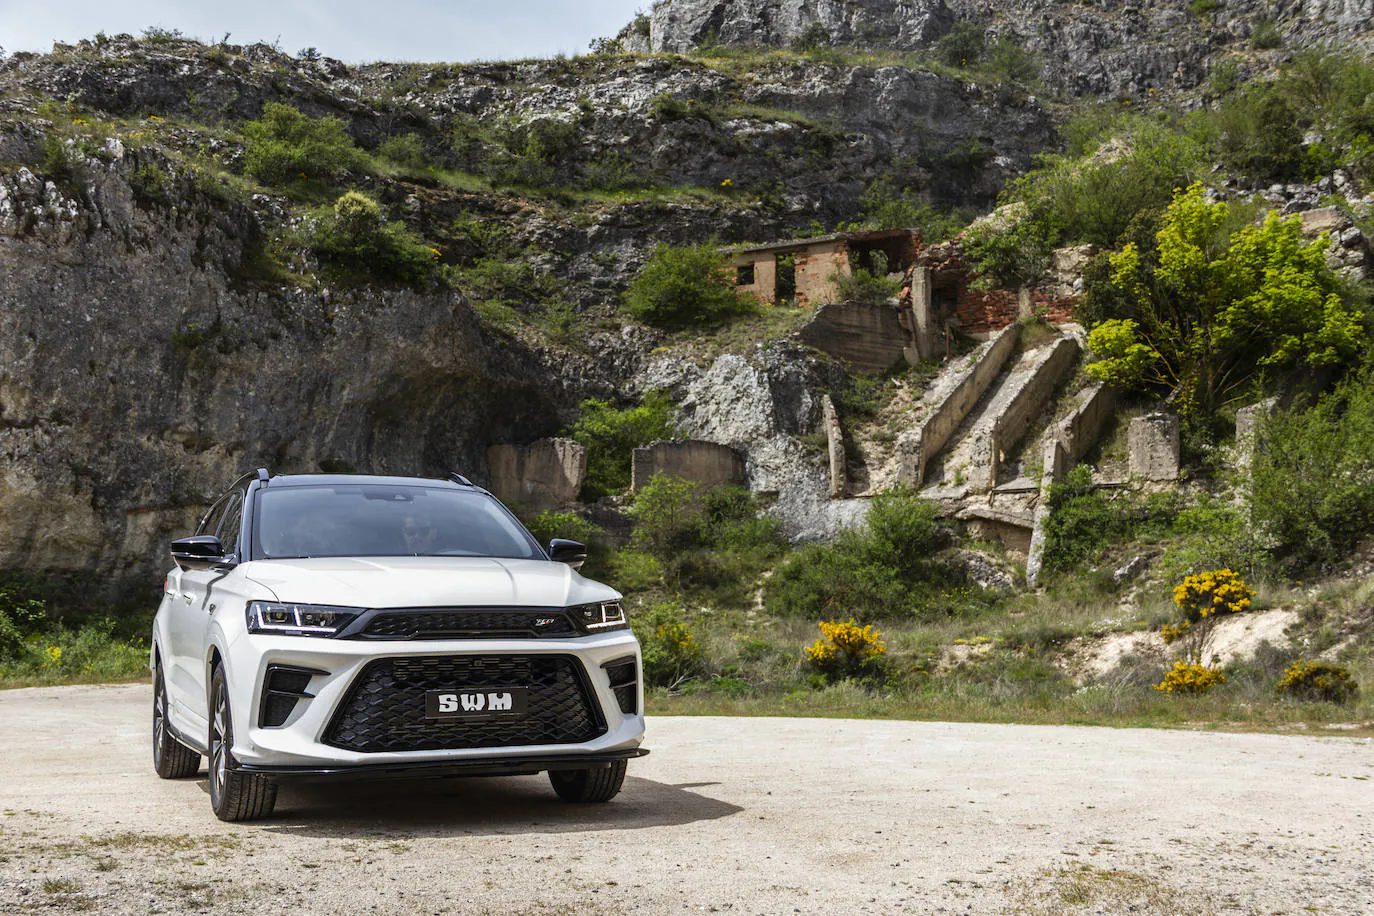 SWM llega a España con su oferta de SUV diseñados en Italia, desde 19.995 euros